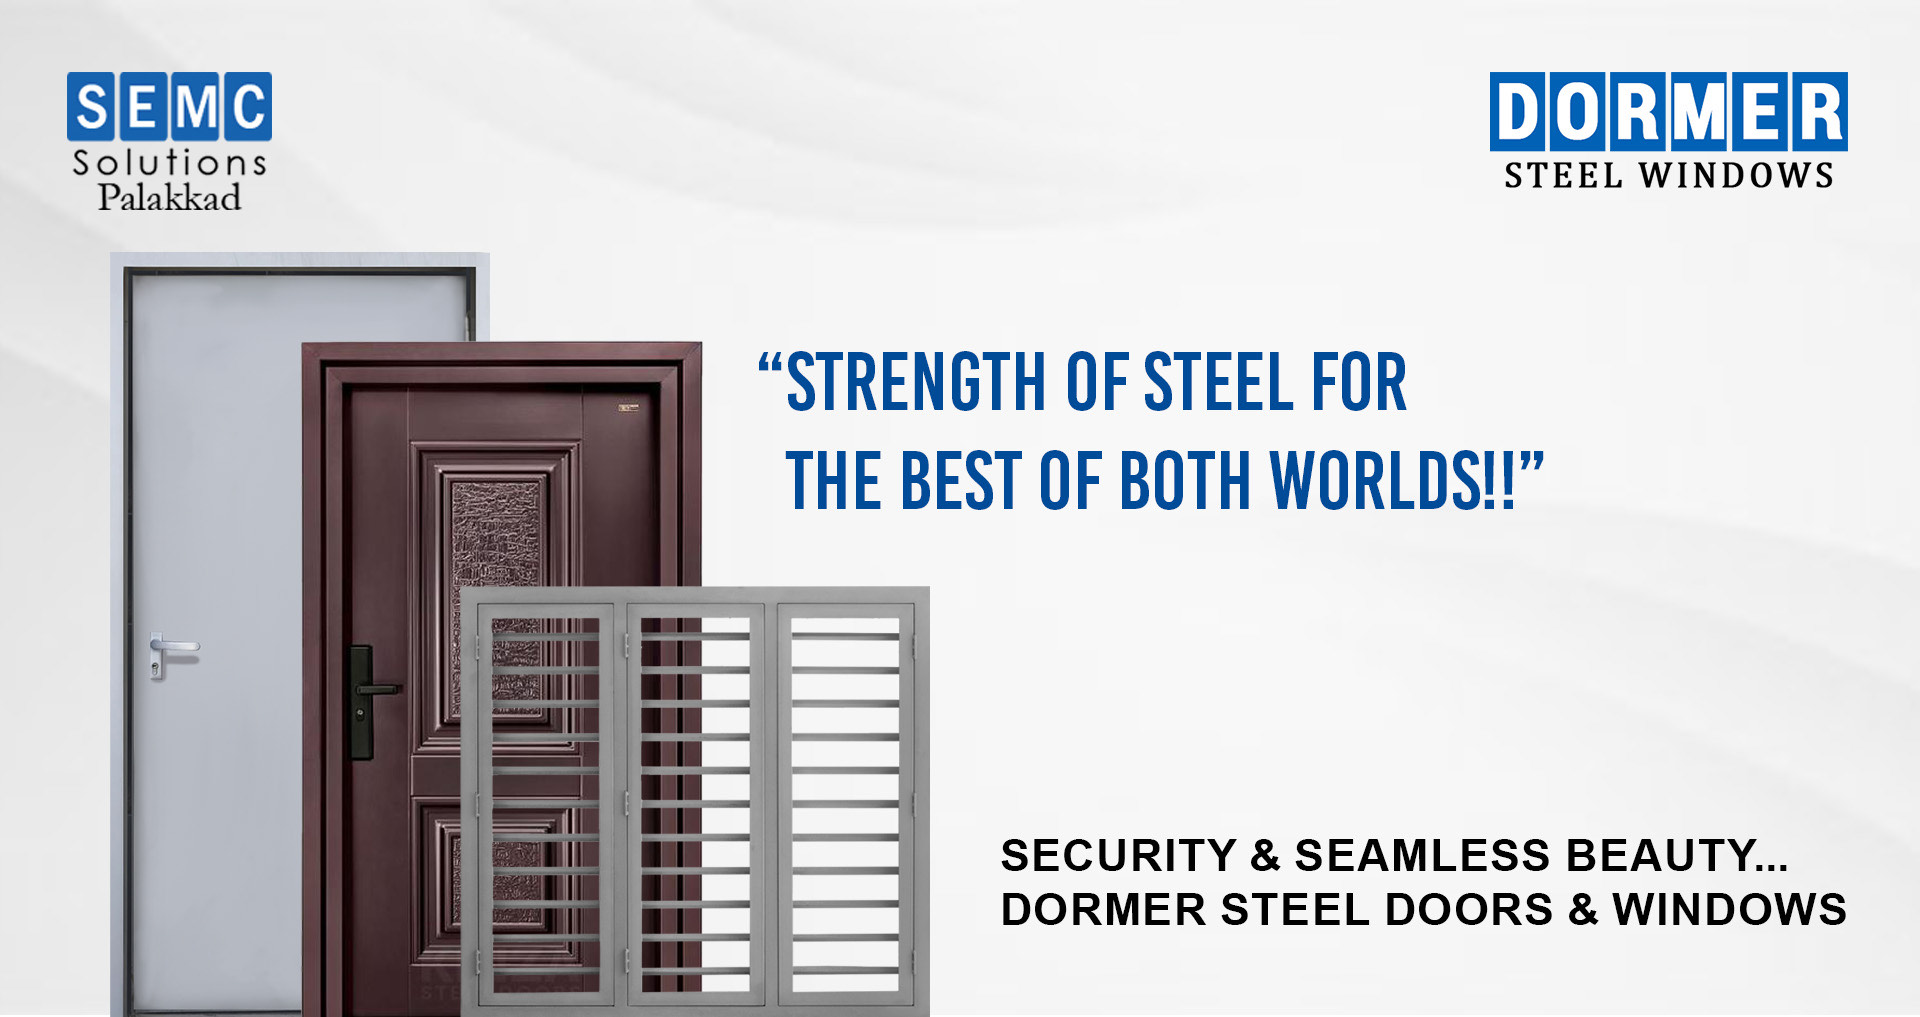 DORMER Steel Doors & Windows